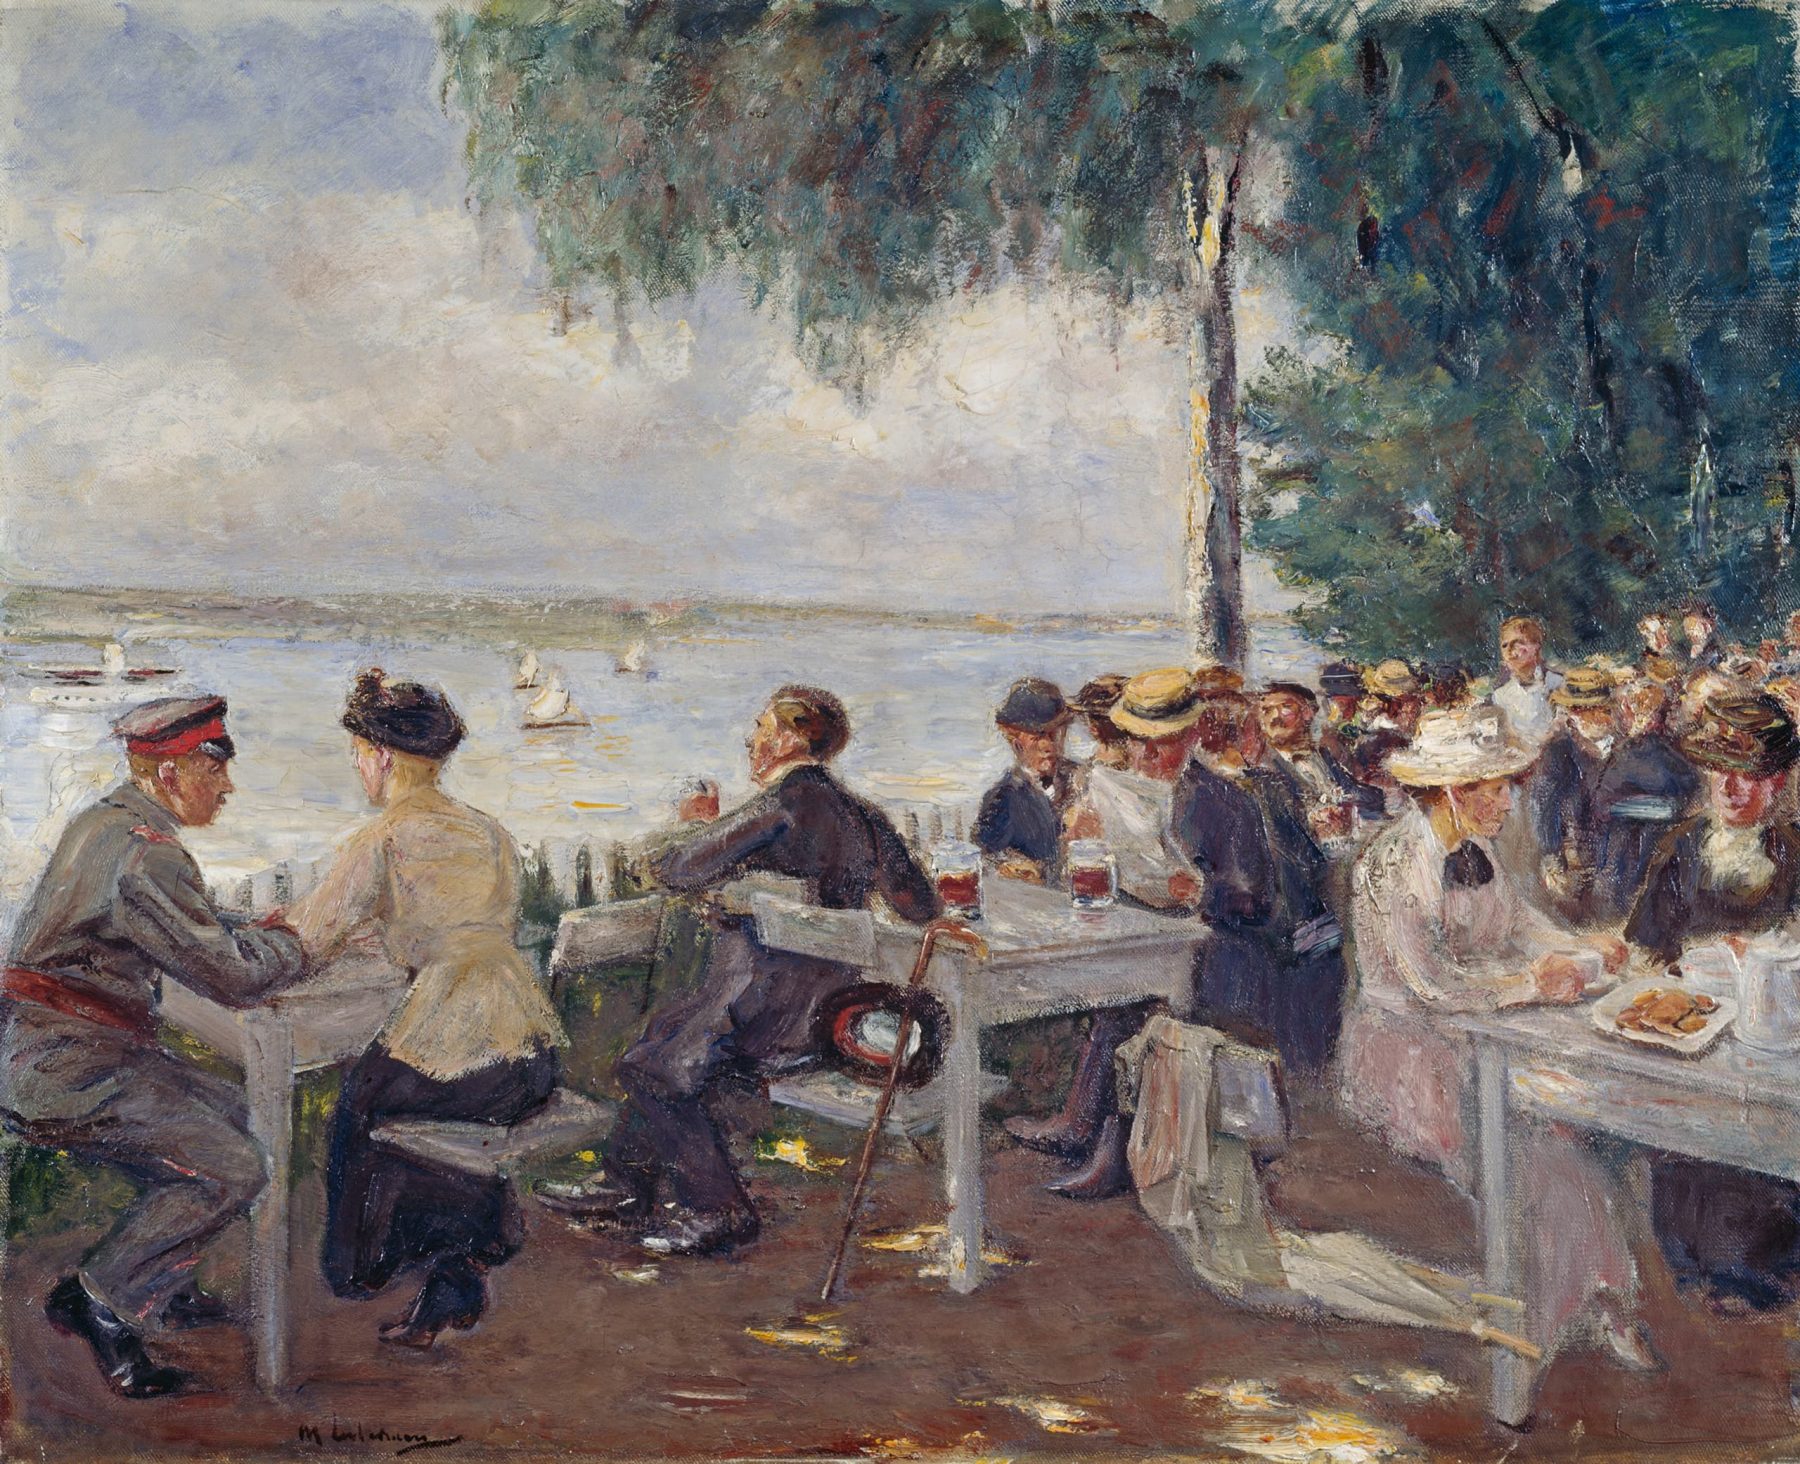 Gemälde einer Biergartenszene am Wasser mit vielen bürgerlichen Personen, die an Tischen sitzen und sich unterhalten.